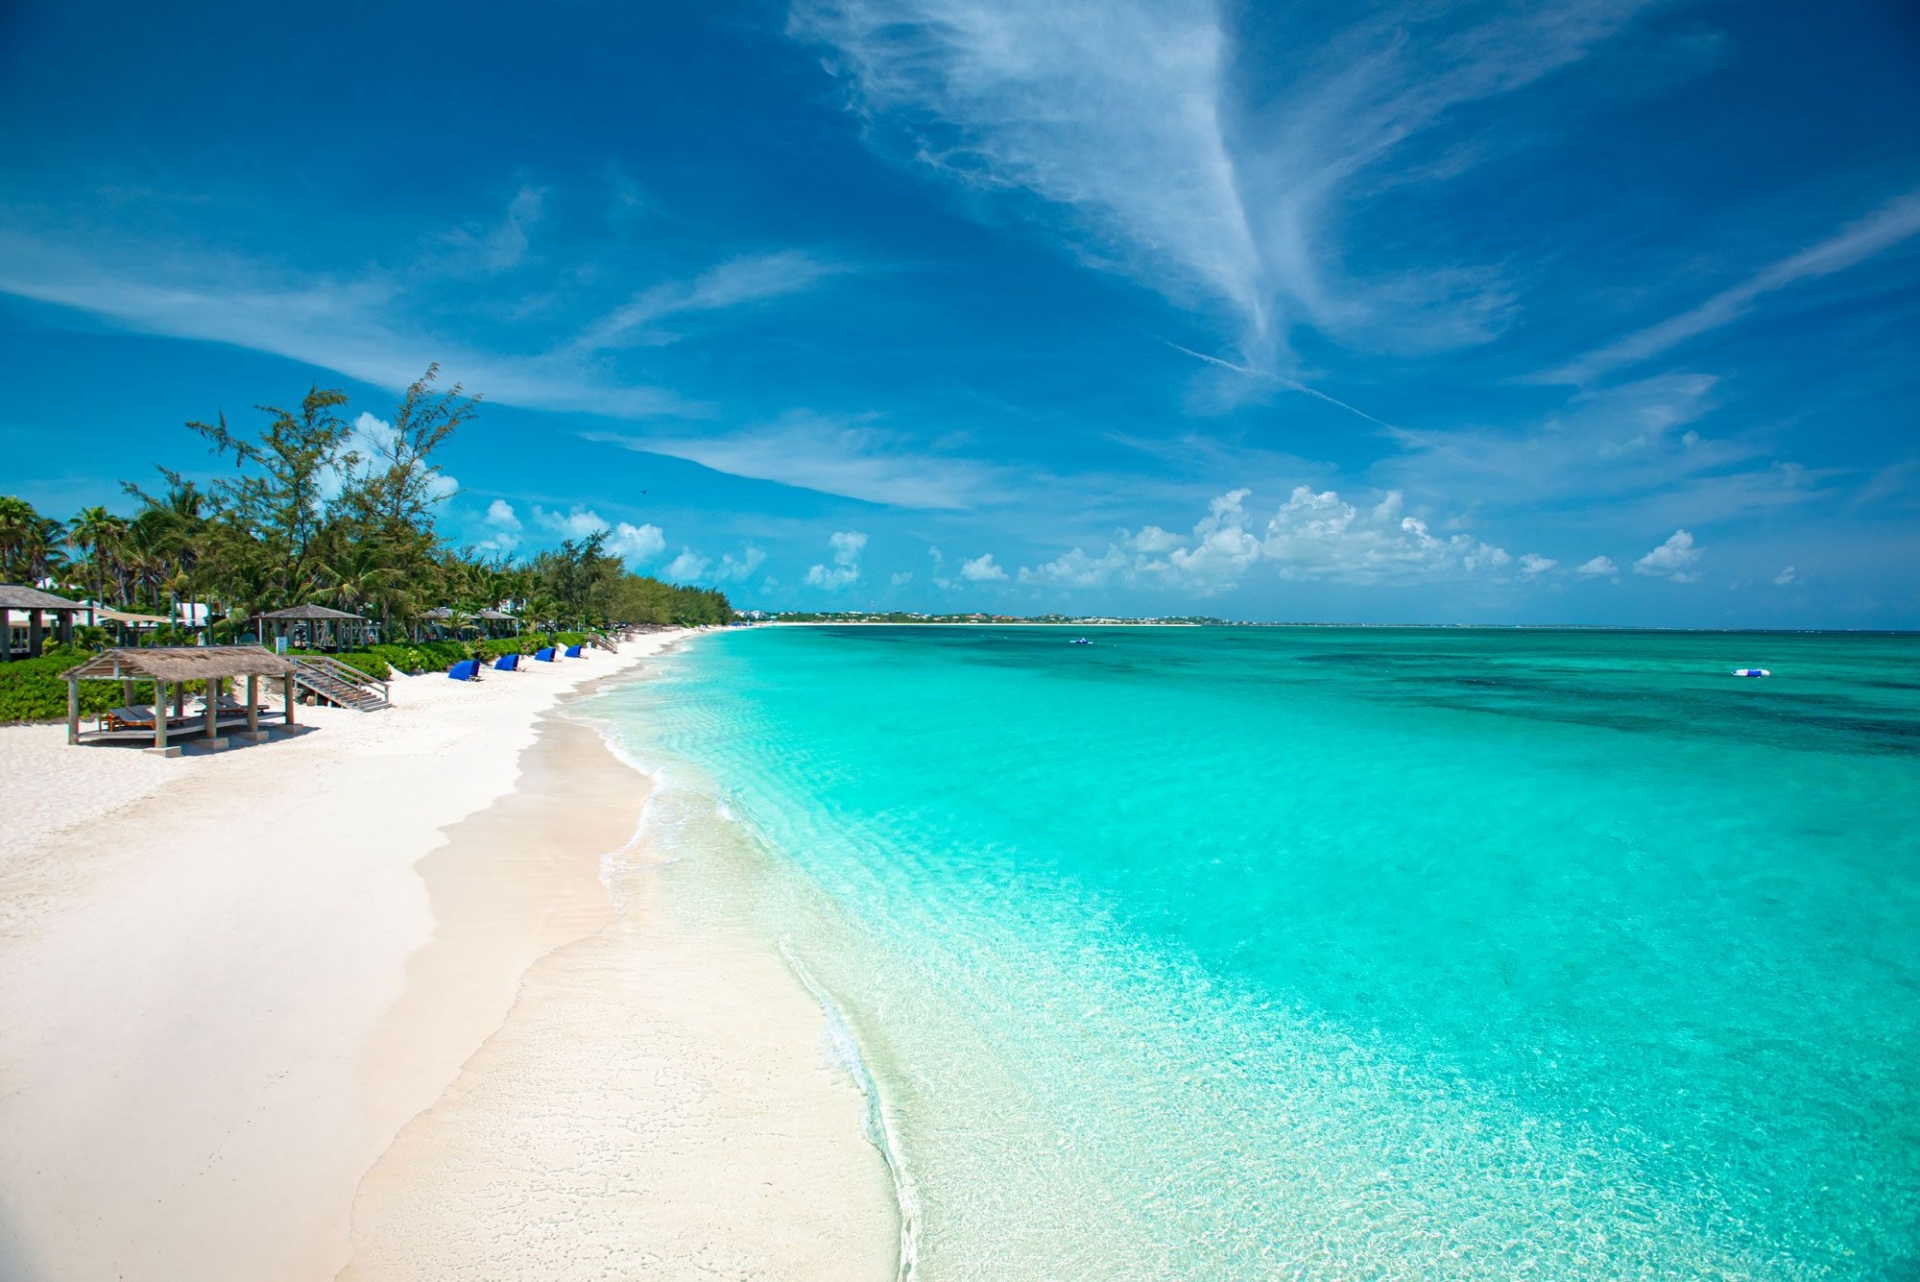 Top 7 stunning beaches all around the world!